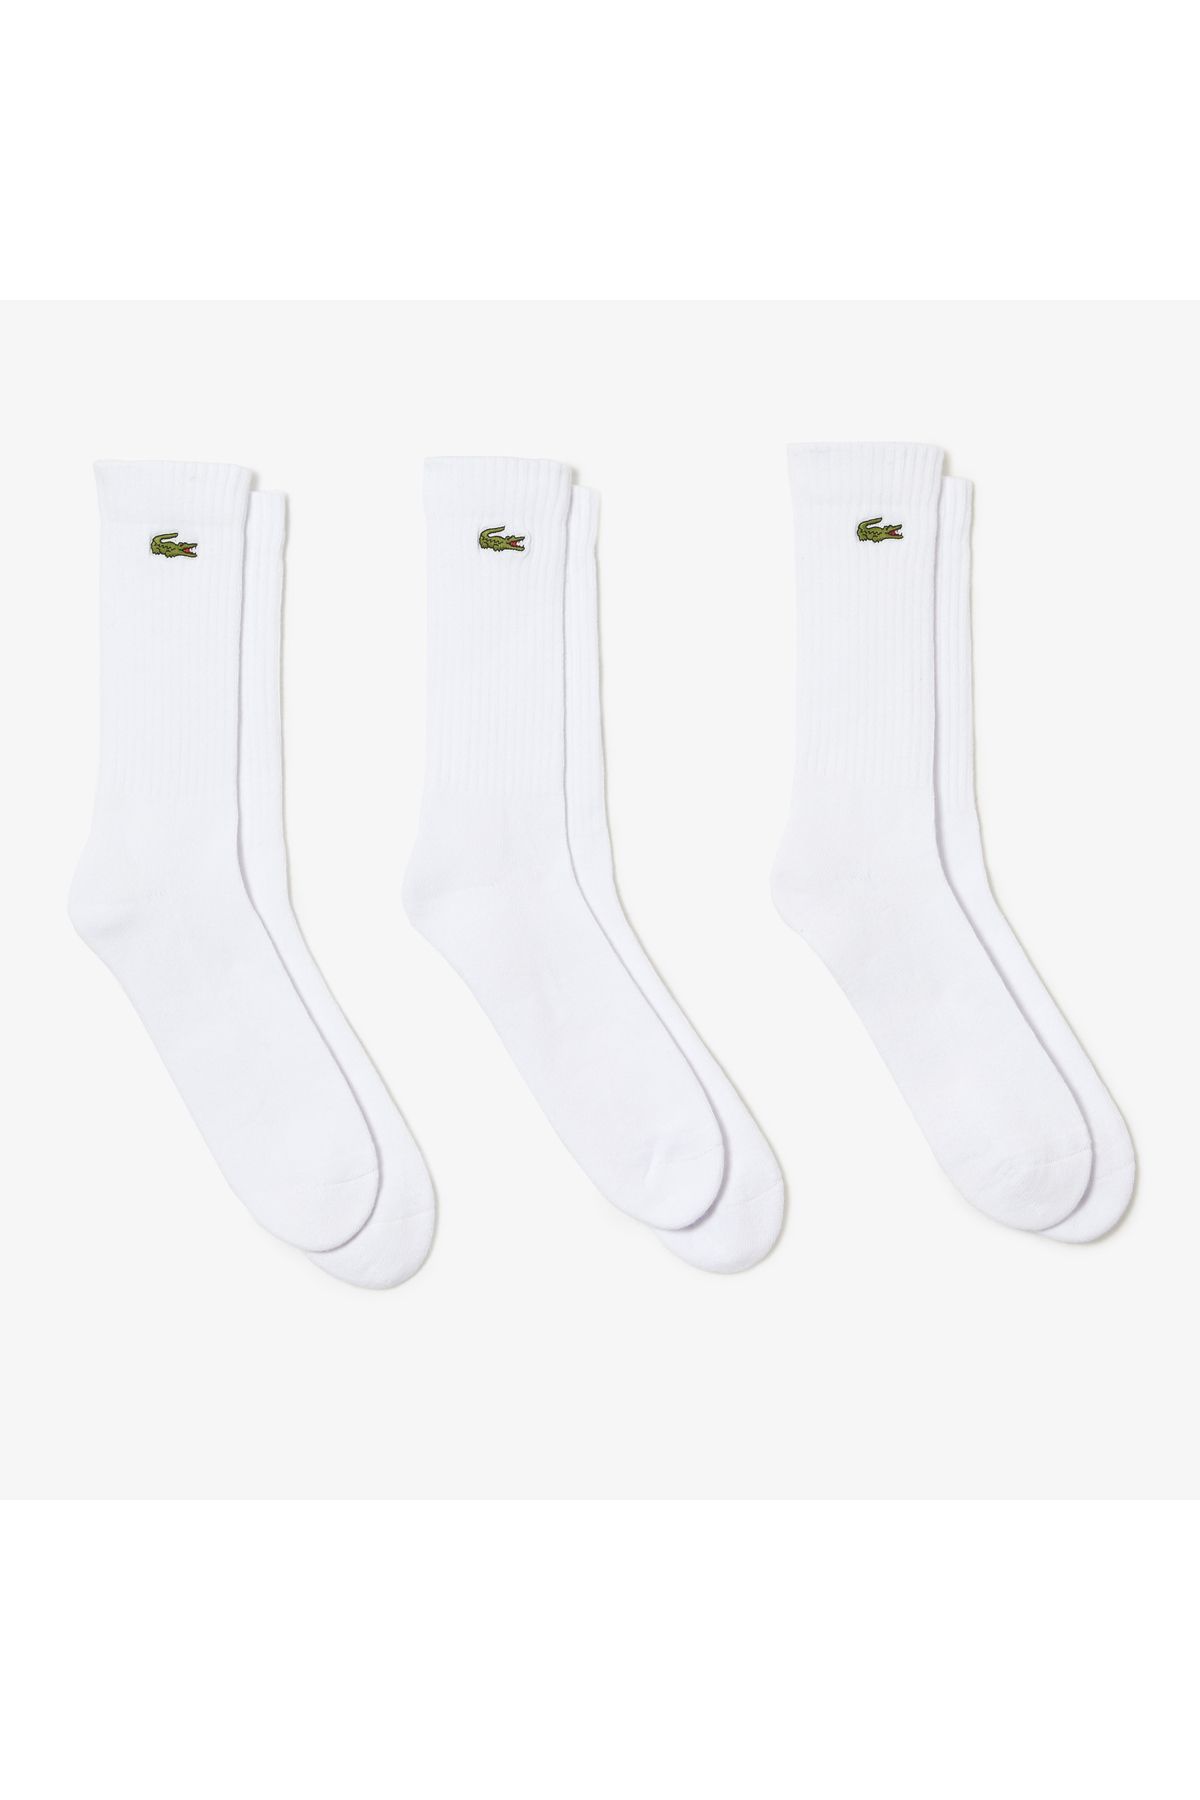 Lacoste Erkek 3'lü Beyaz Çorap